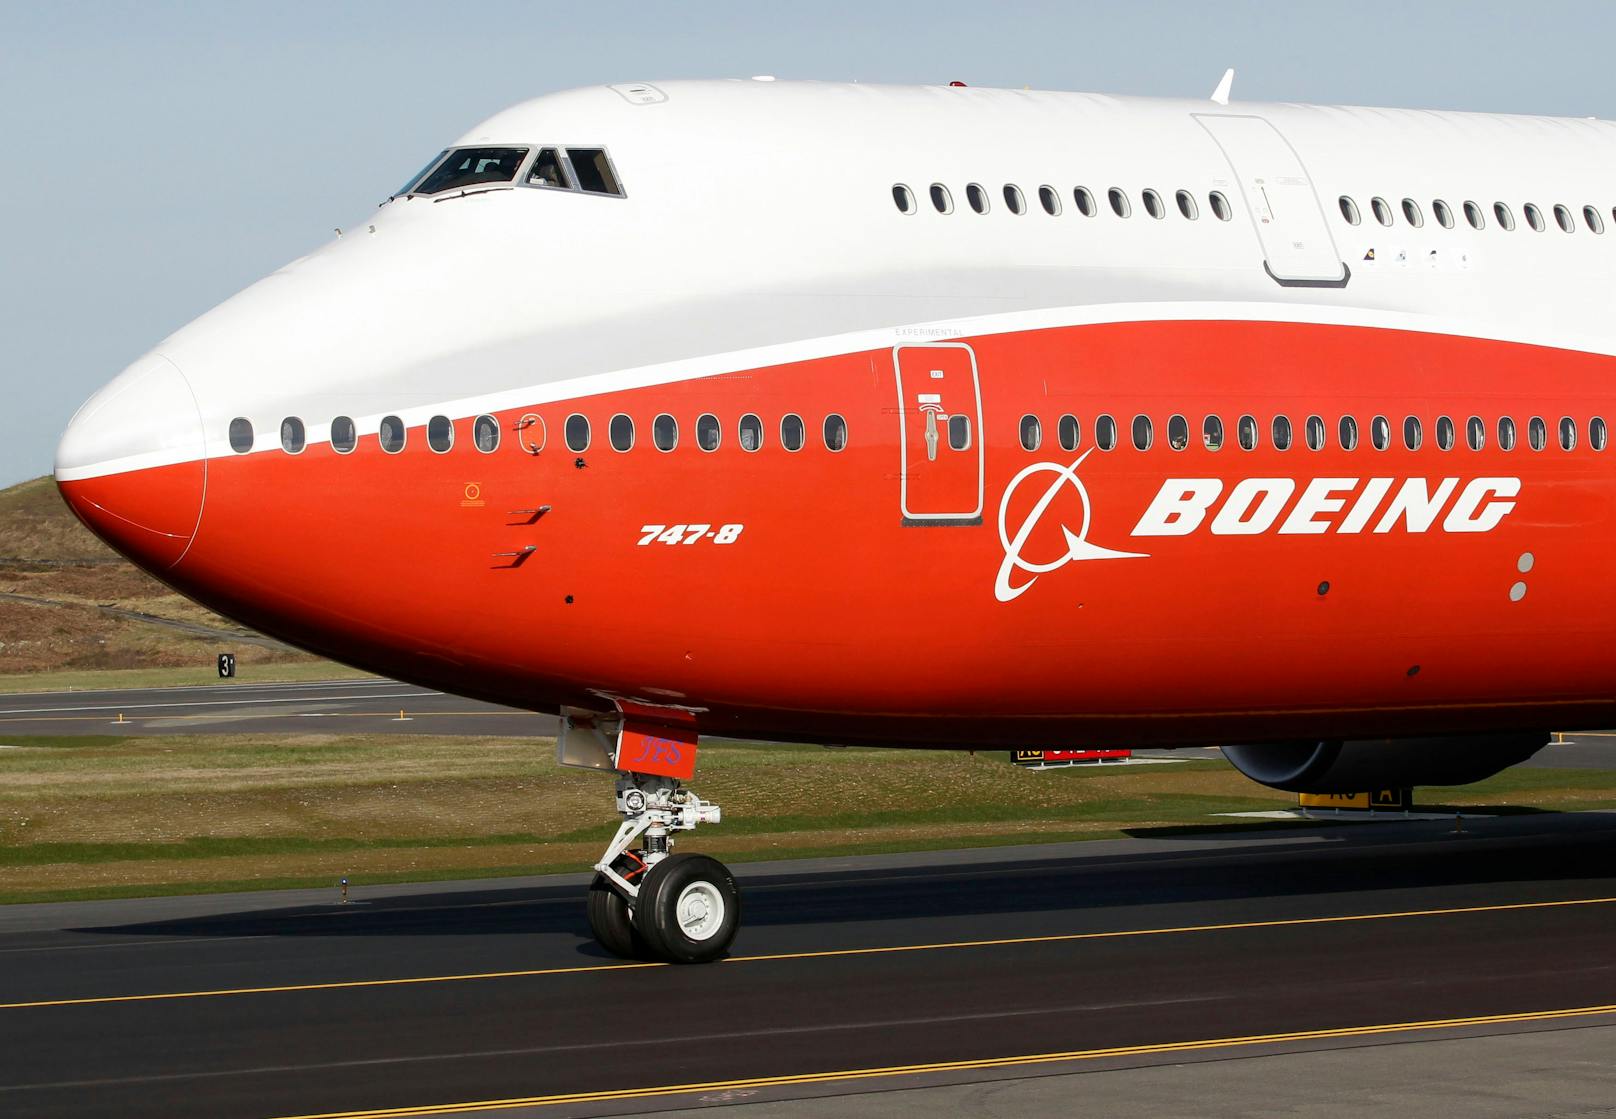 Schluss nach 50 Jahren – Boeing liefert letzte 747 aus